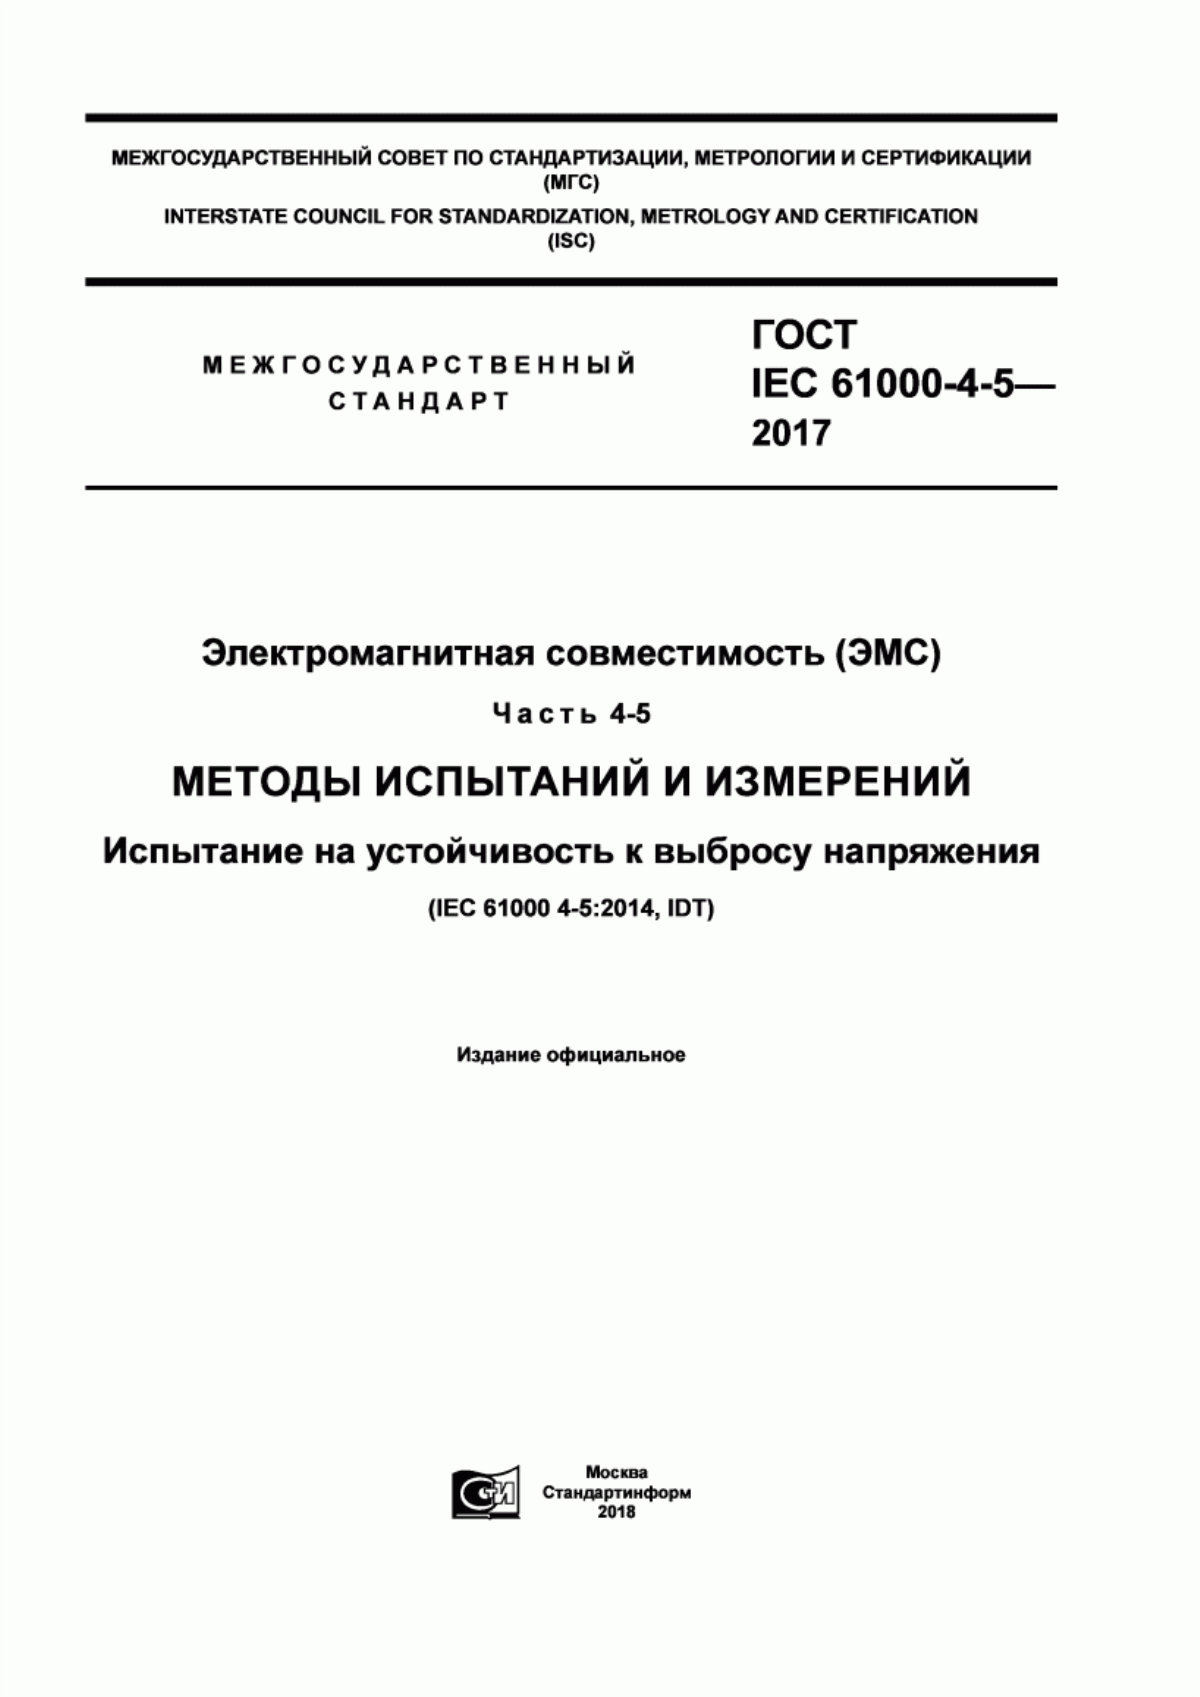 ГОСТ IEC 61000-4-5-2017 Электромагнитная совместимость (ЭМС). Часть 4-5. Методы испытаний и измерений. Испытание на устойчивость к выбросу напряжения